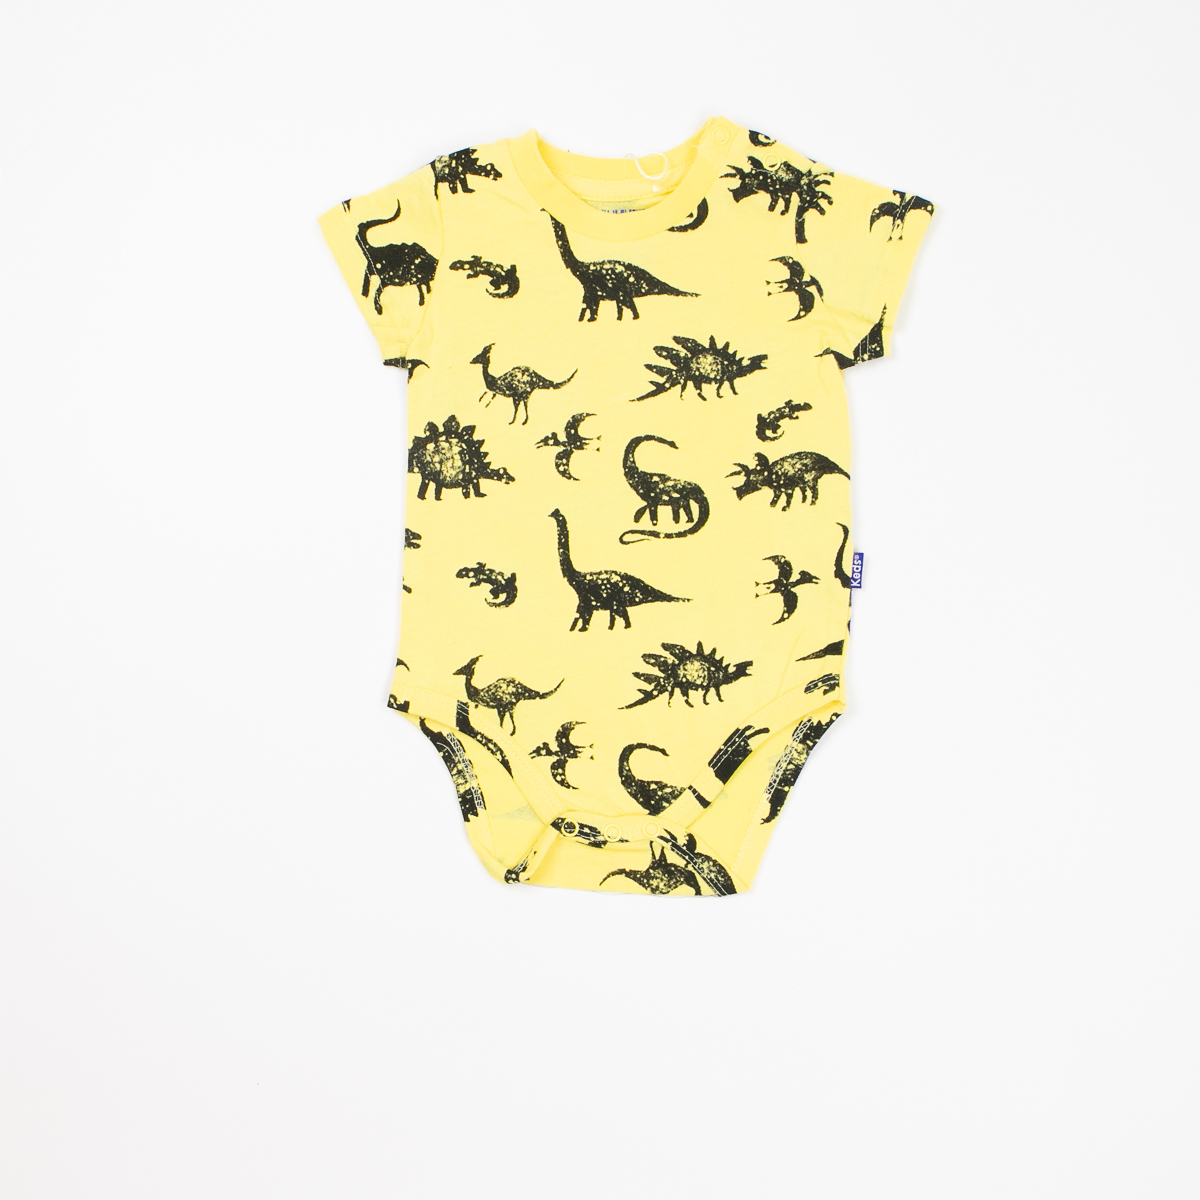 בגדי גוף  שרוול קצר לתינוקות בנים בצבעים צהוב ו שחור בהיר